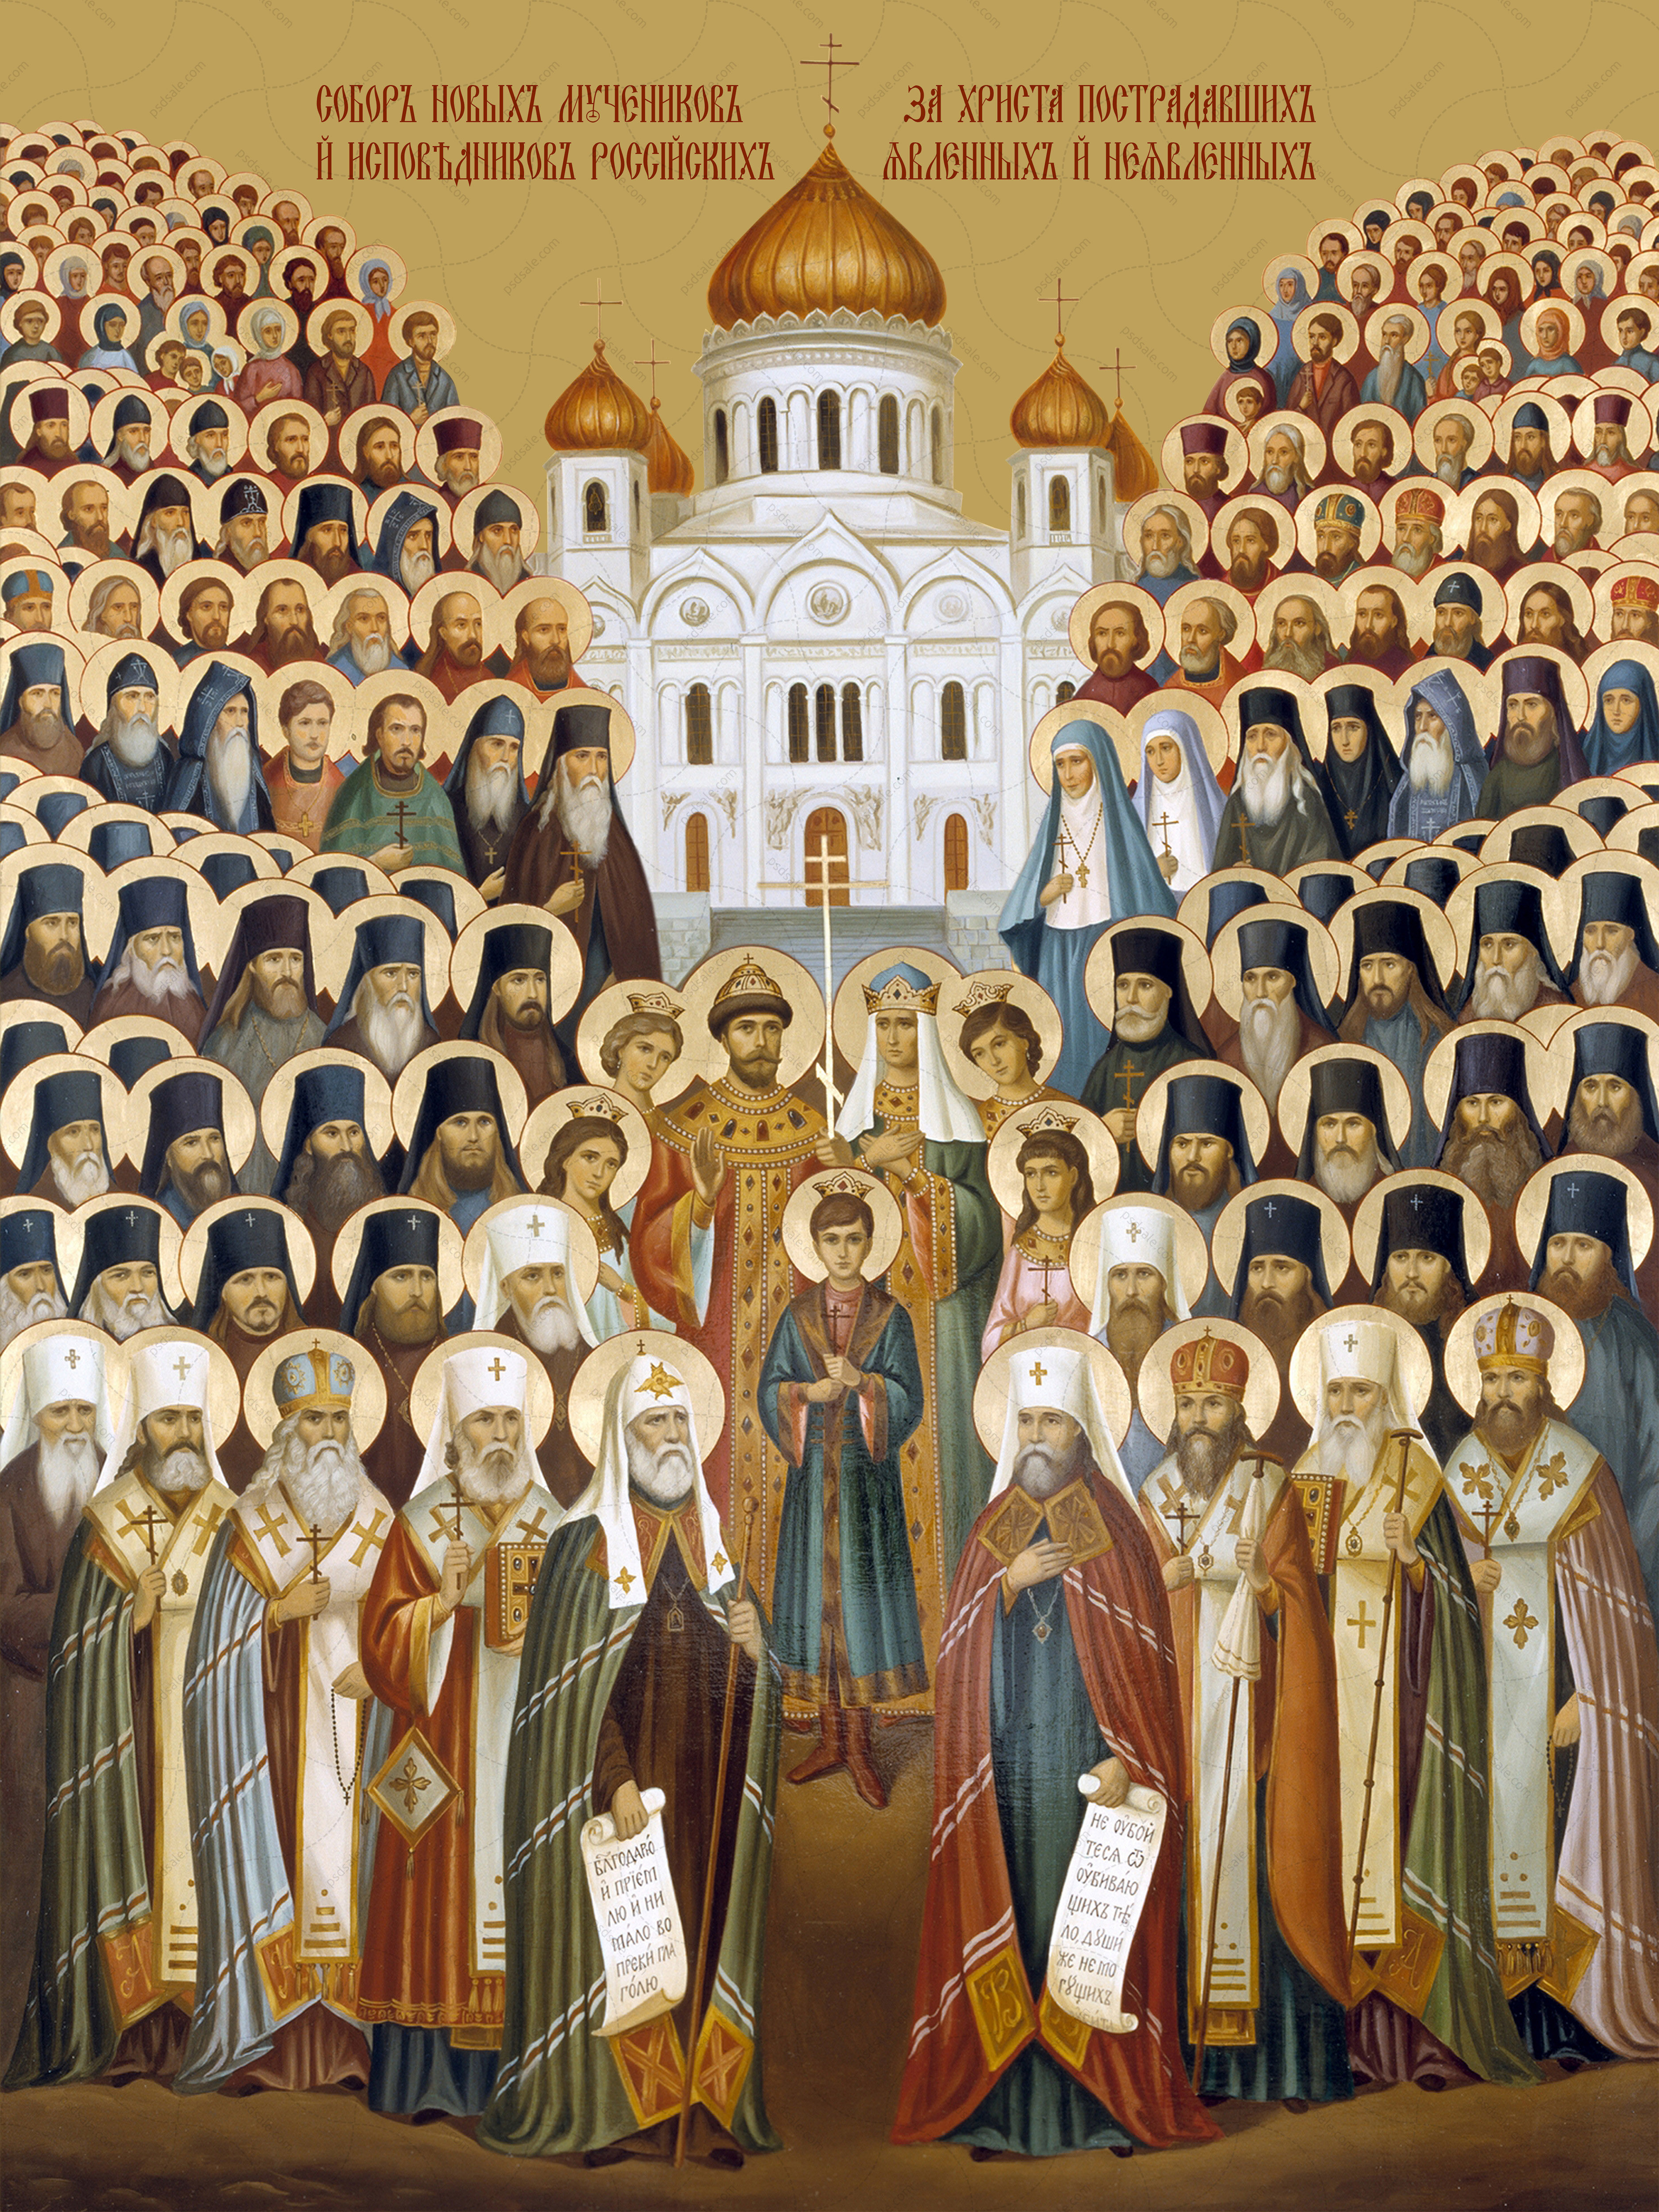 1 русские православные святые. Икона собора новомучеников и исповедников российских 20 века.